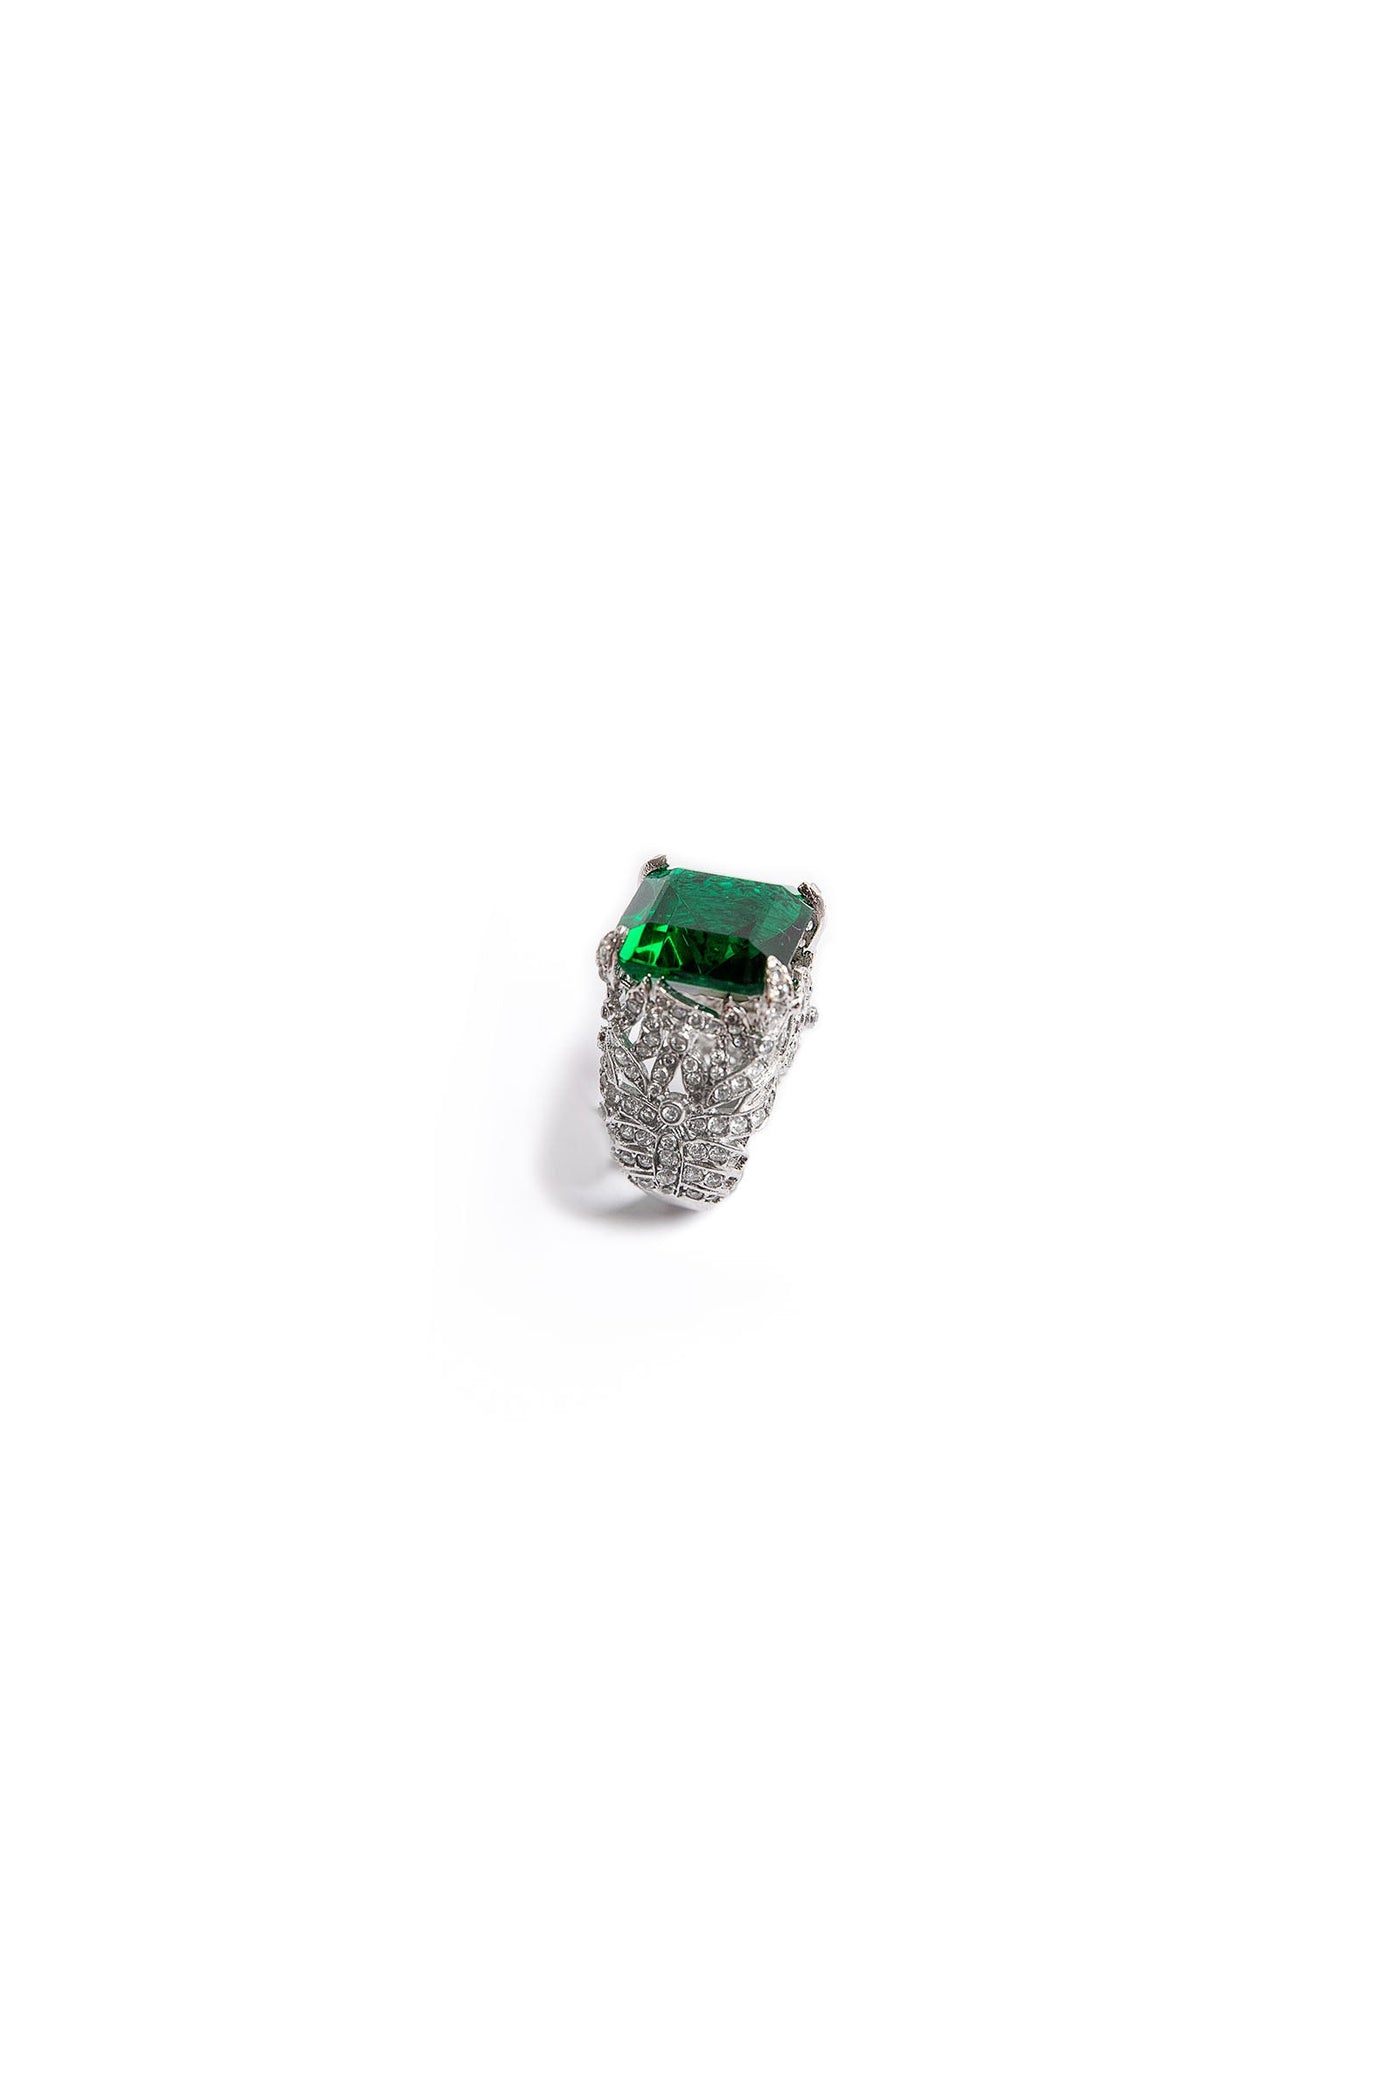 JRG-W23-06-Emerald Green